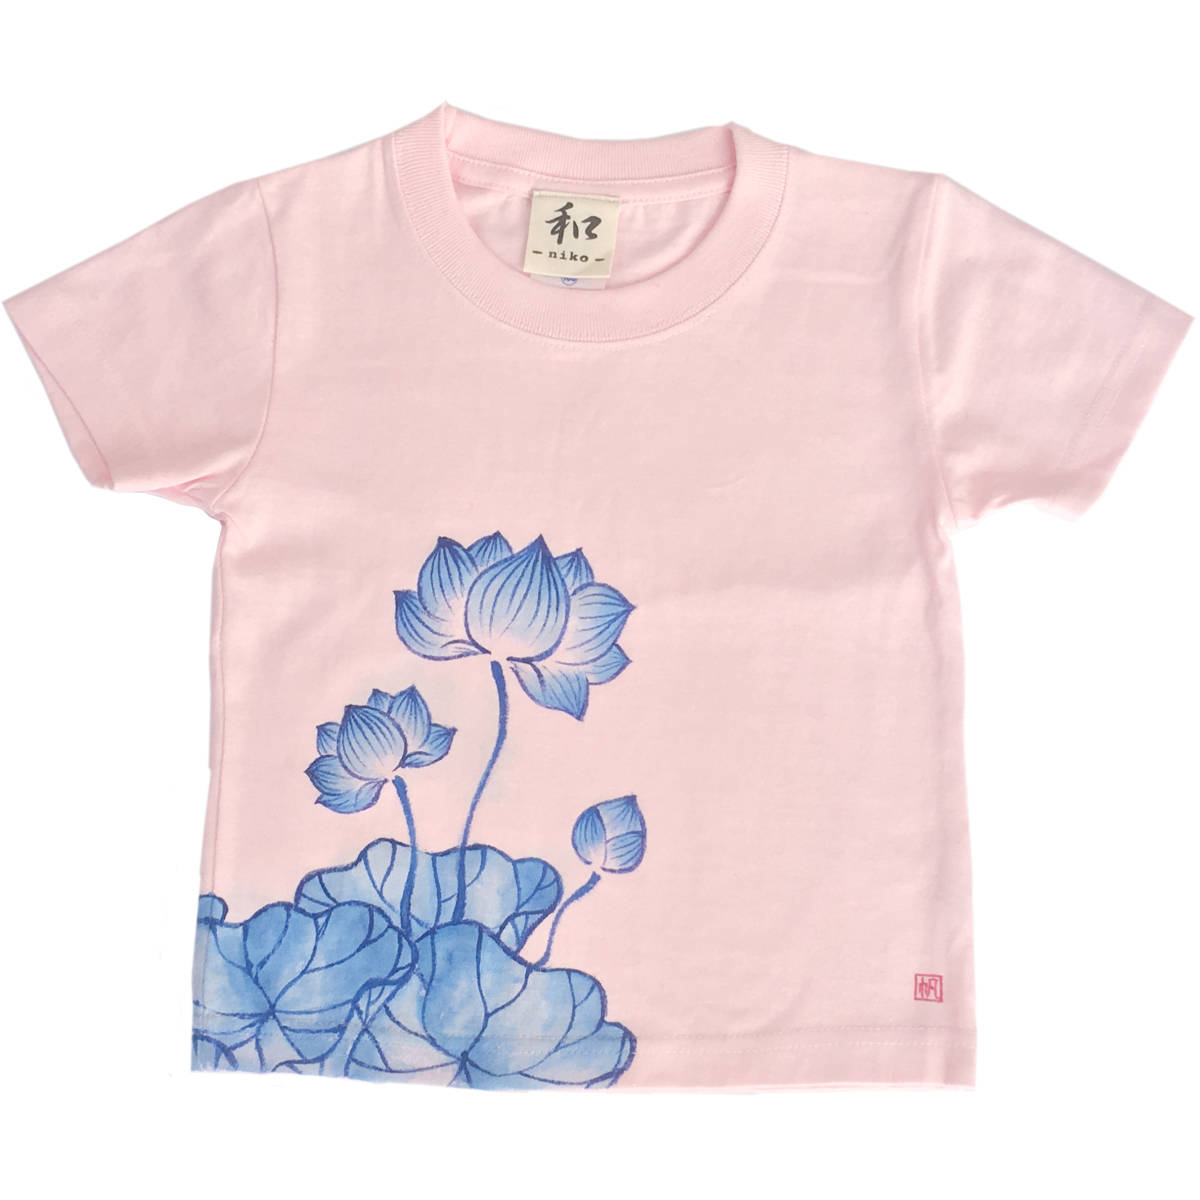 Kinder-T-Shirt, Größe 130, Rosafarbenes T-Shirt mit Lotusmuster, handbemaltes T-Shirt mit Lotusblumenmuster, Kurzarm, Japanisches Muster, japanischer Stil, Retro, handgefertigt, Spitzen, Kurzärmeliges T-shirt, 130 (125 ~ 134 cm)